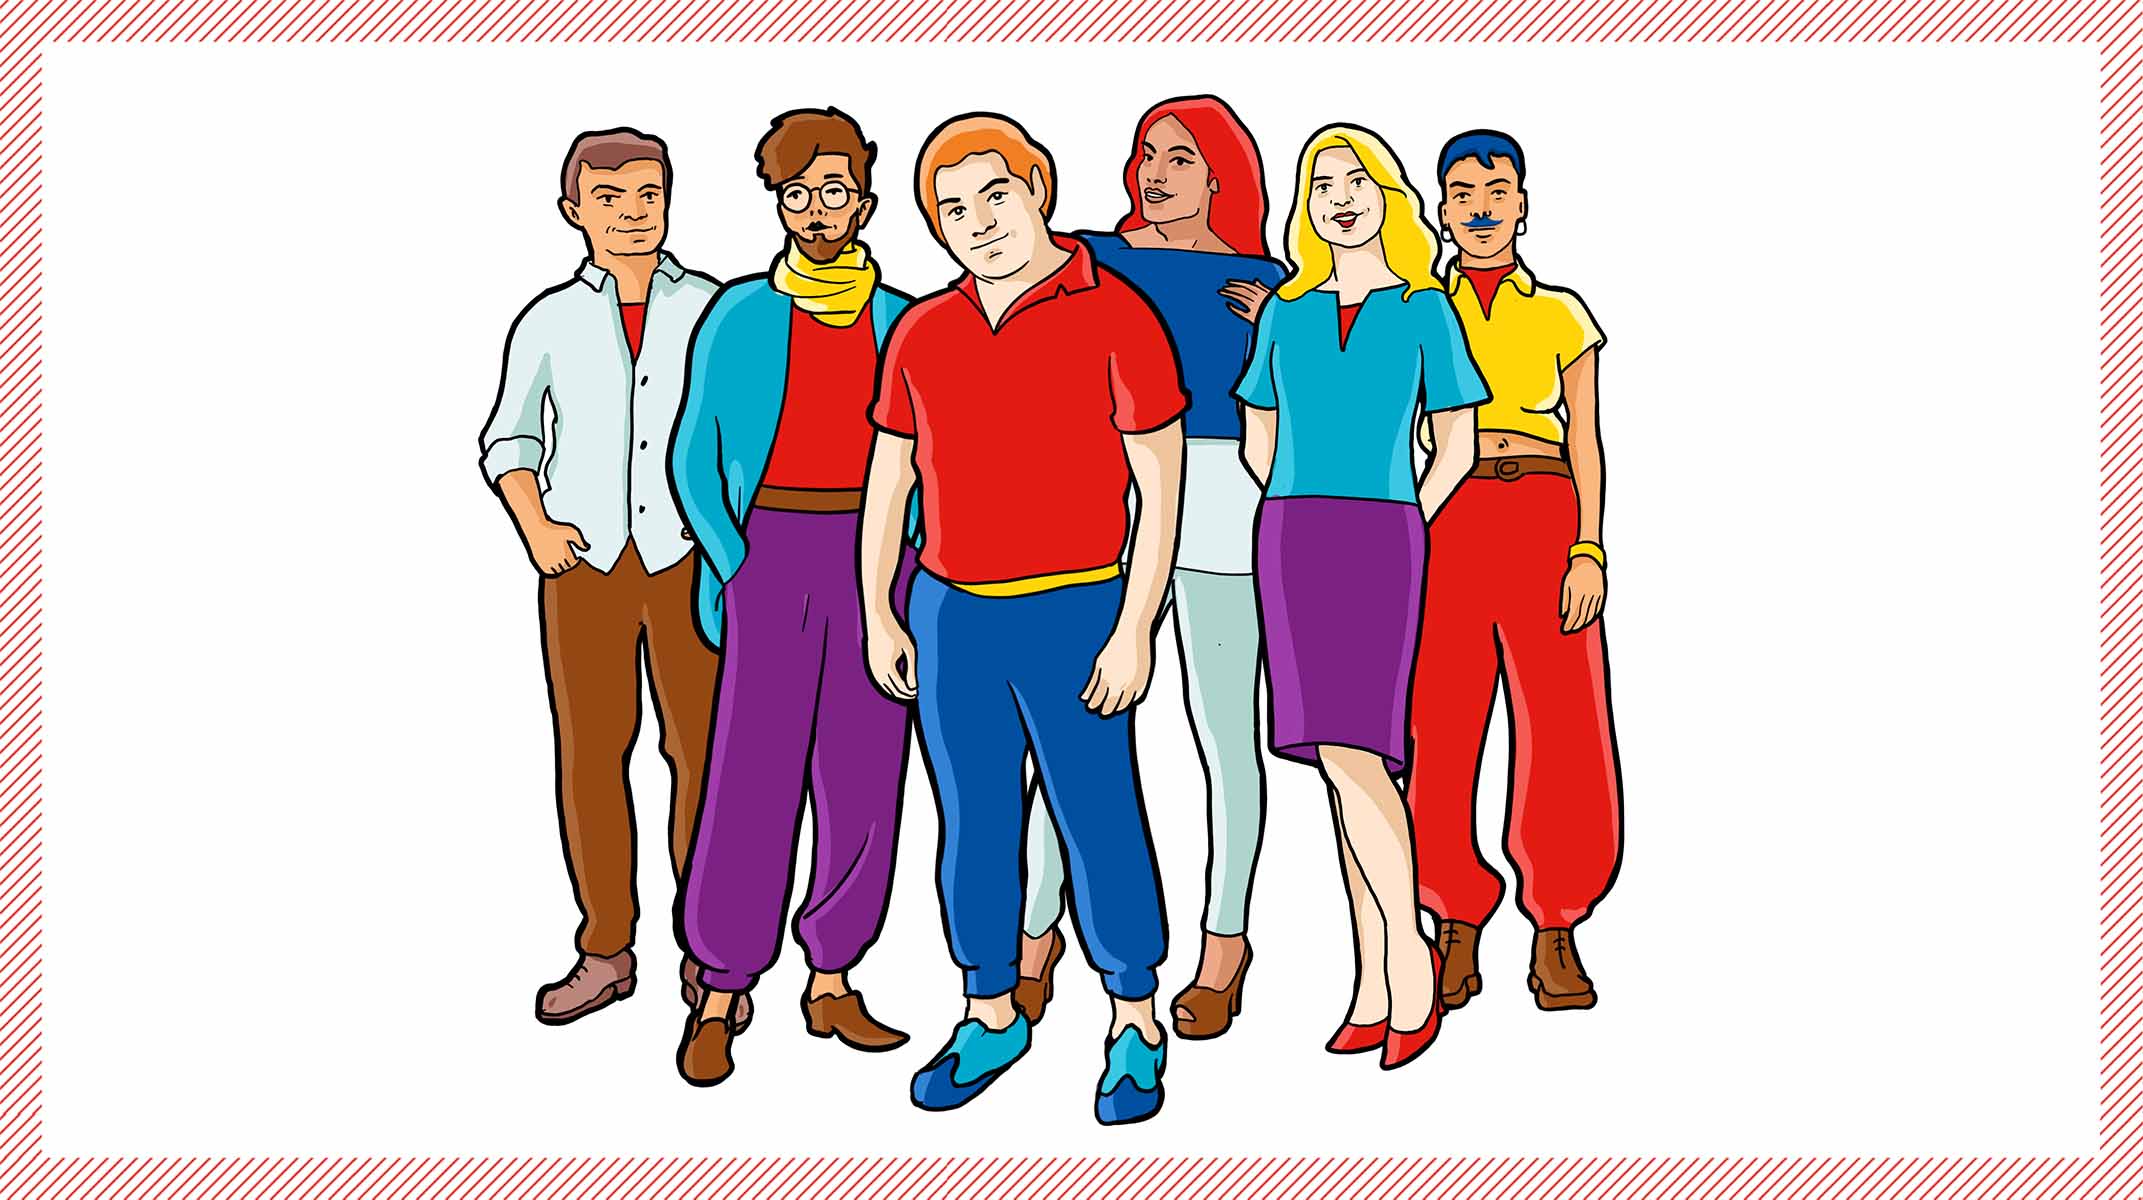 Eine farbenfrohe Illustration von sechs stehenden Menschen mit unterschiedlichen Geschlechtern, verschiedenen Hautfarben und diversen Haarfarben.